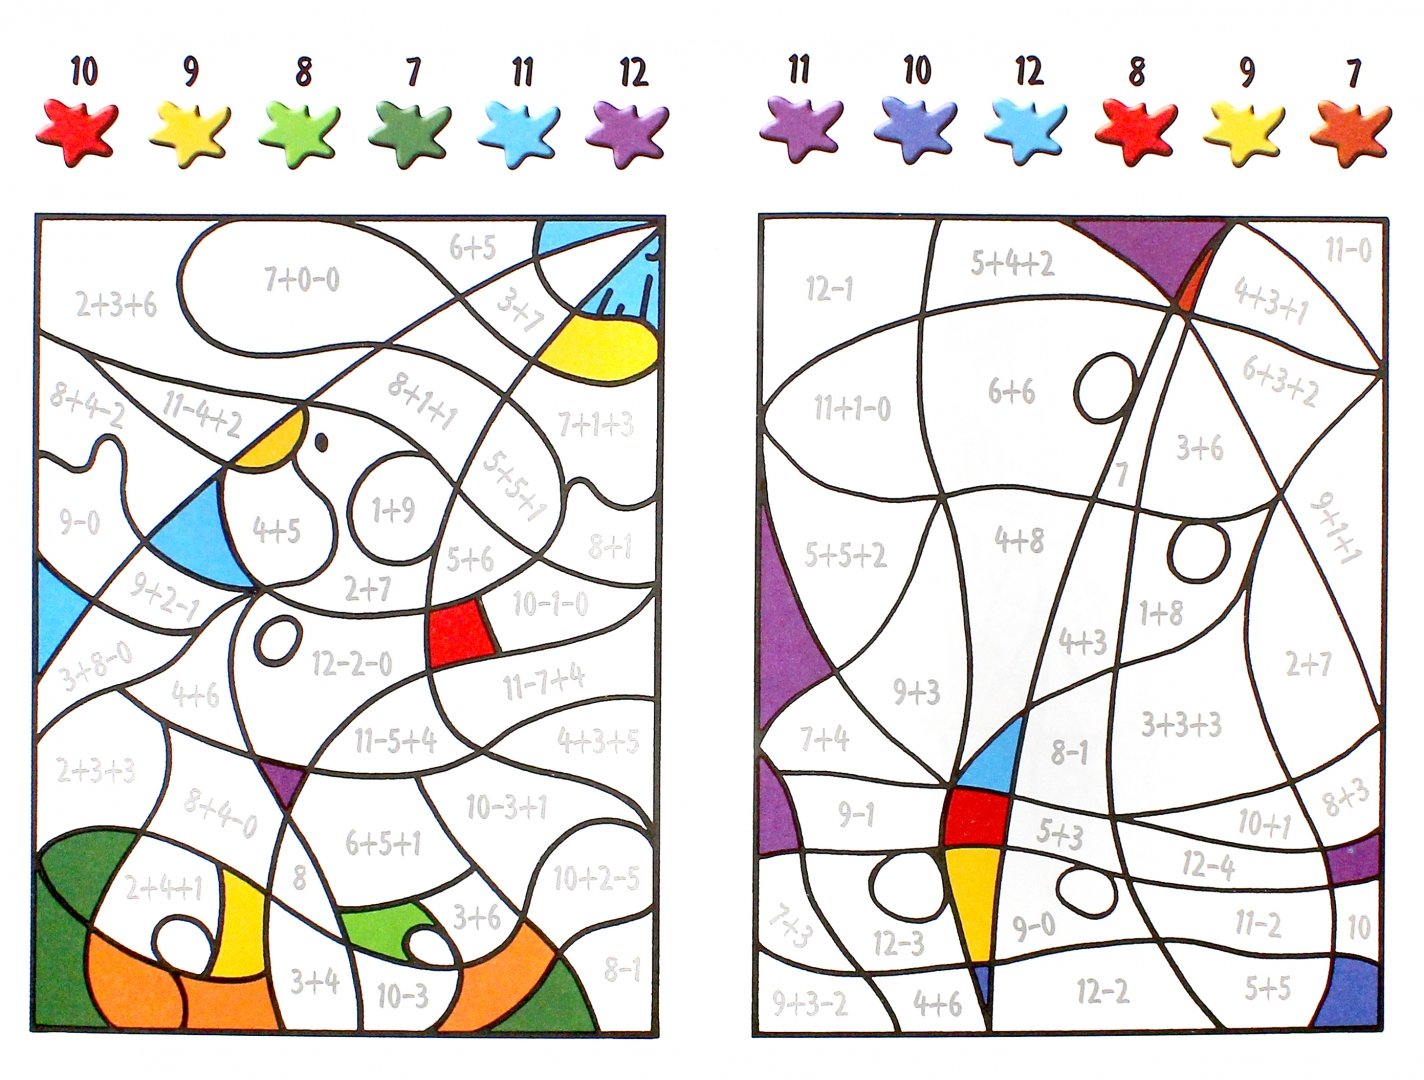 Иллюстрация 1 из 8 для Счет до 12. Для детей от 5-ти лет | Лабиринт - книги. Источник: Лабиринт